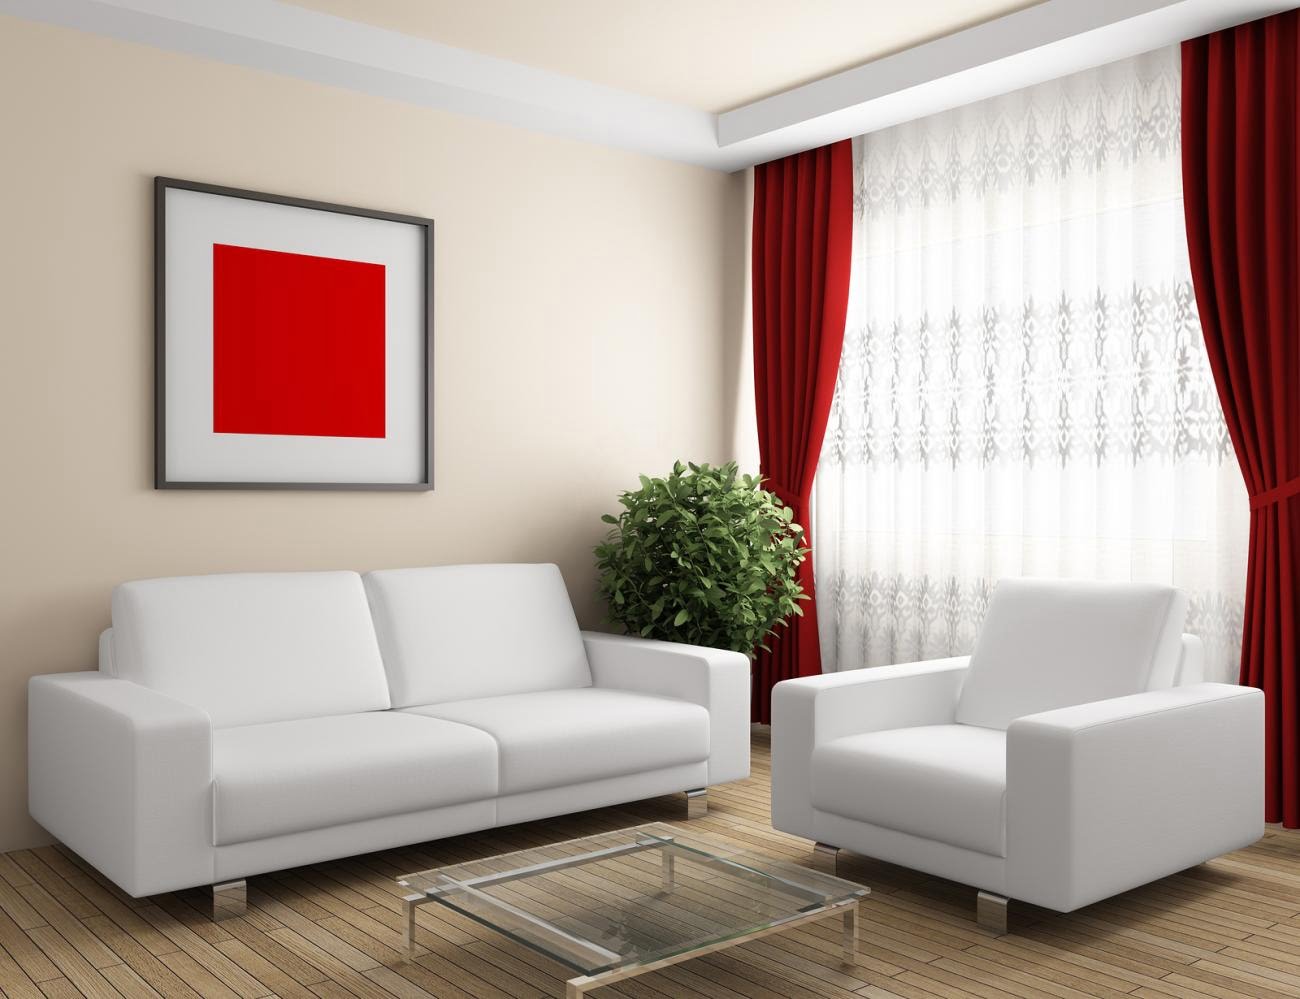 Sự kết hợp của rèm màu đỏ với tông màu trắng của căn phòng